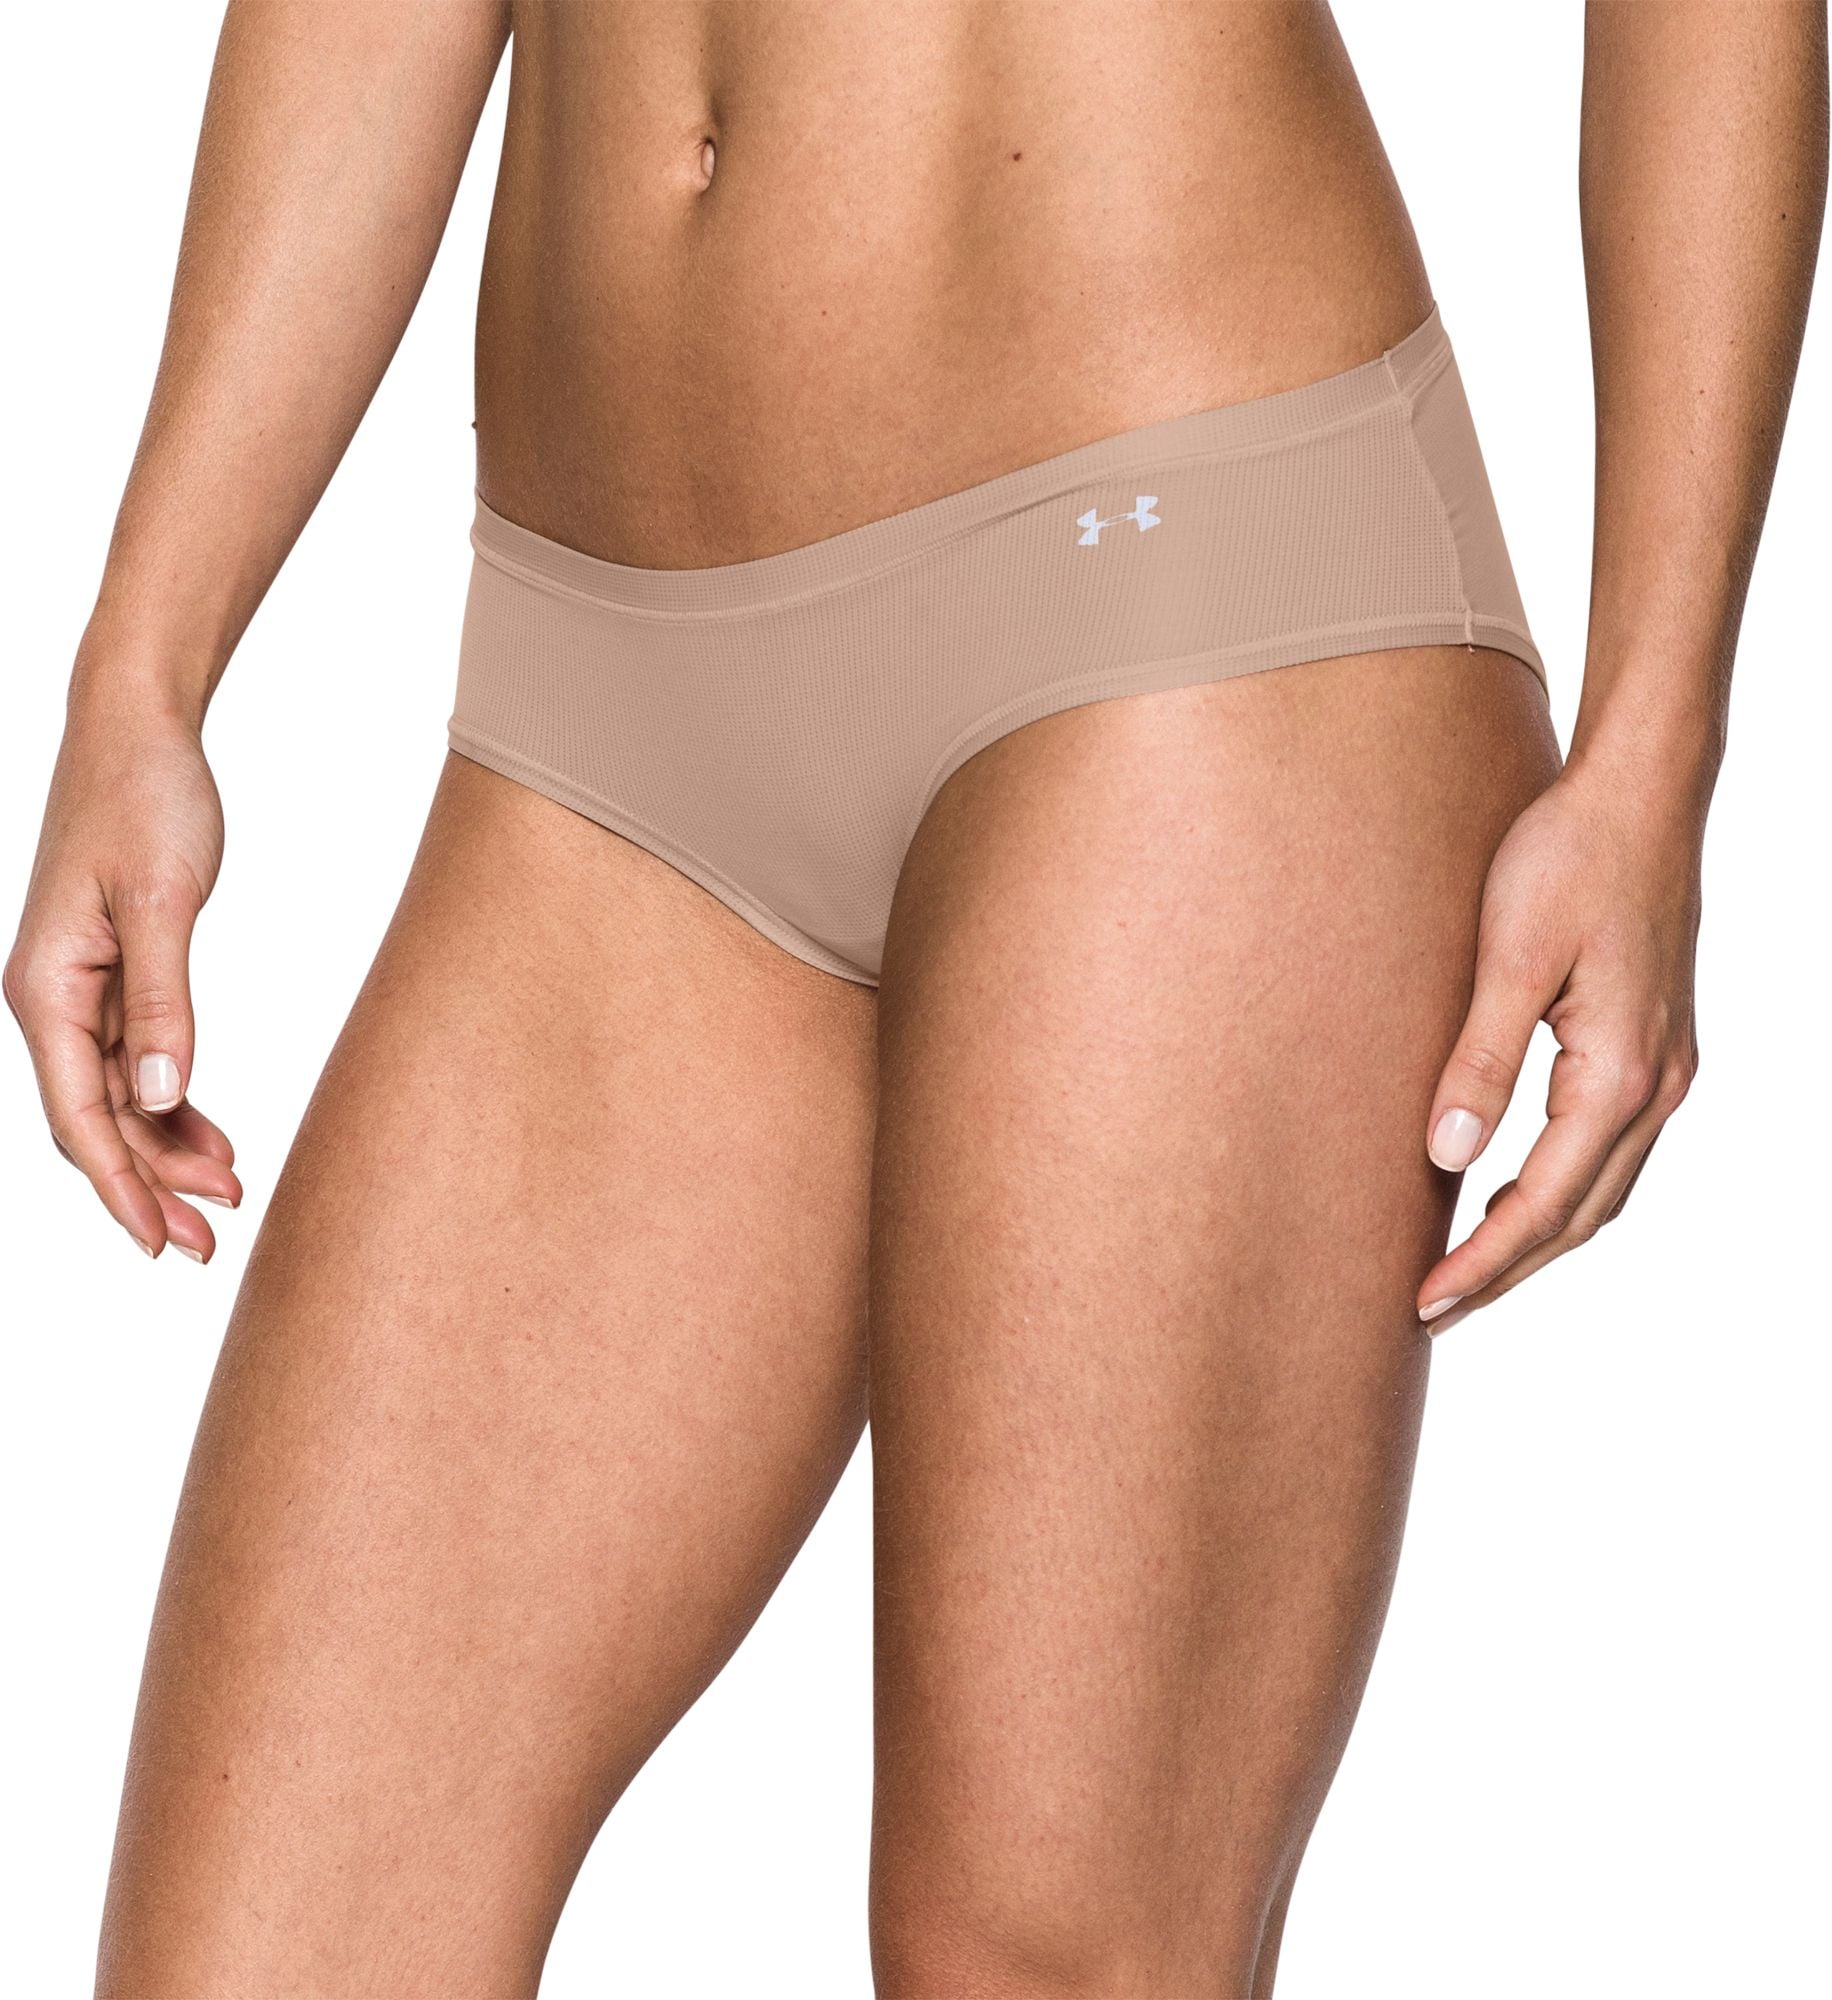 Best Athletic Underwear For Women